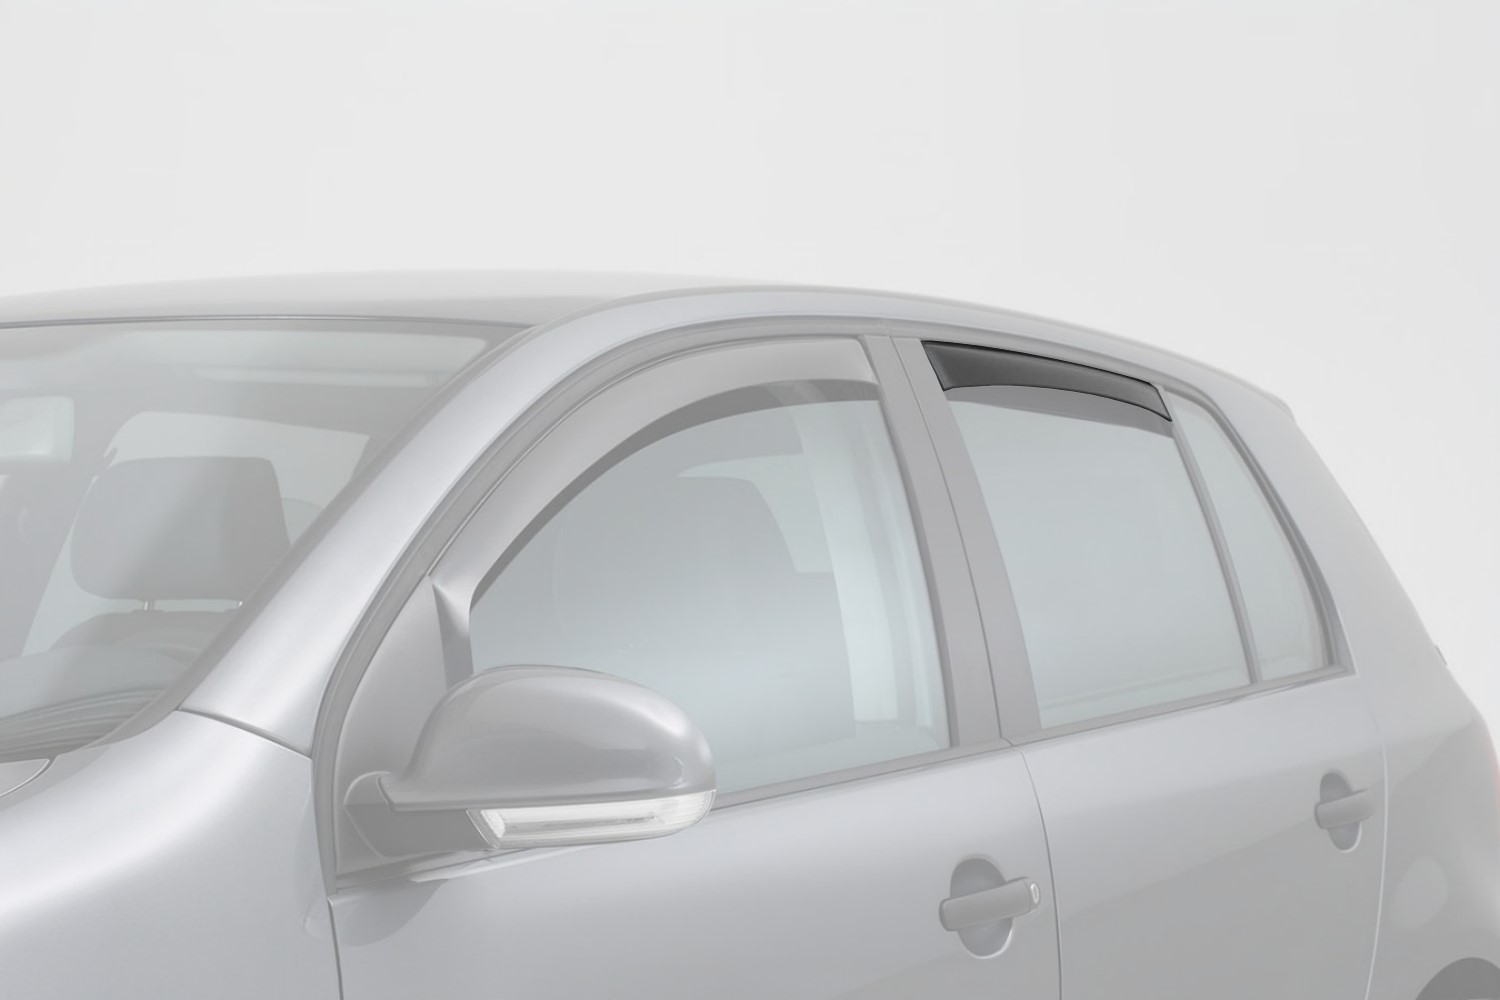 Déflecteurs fenêtre Seat Altea XL (5p) 2006-2015 portes arrière - Gris fumé